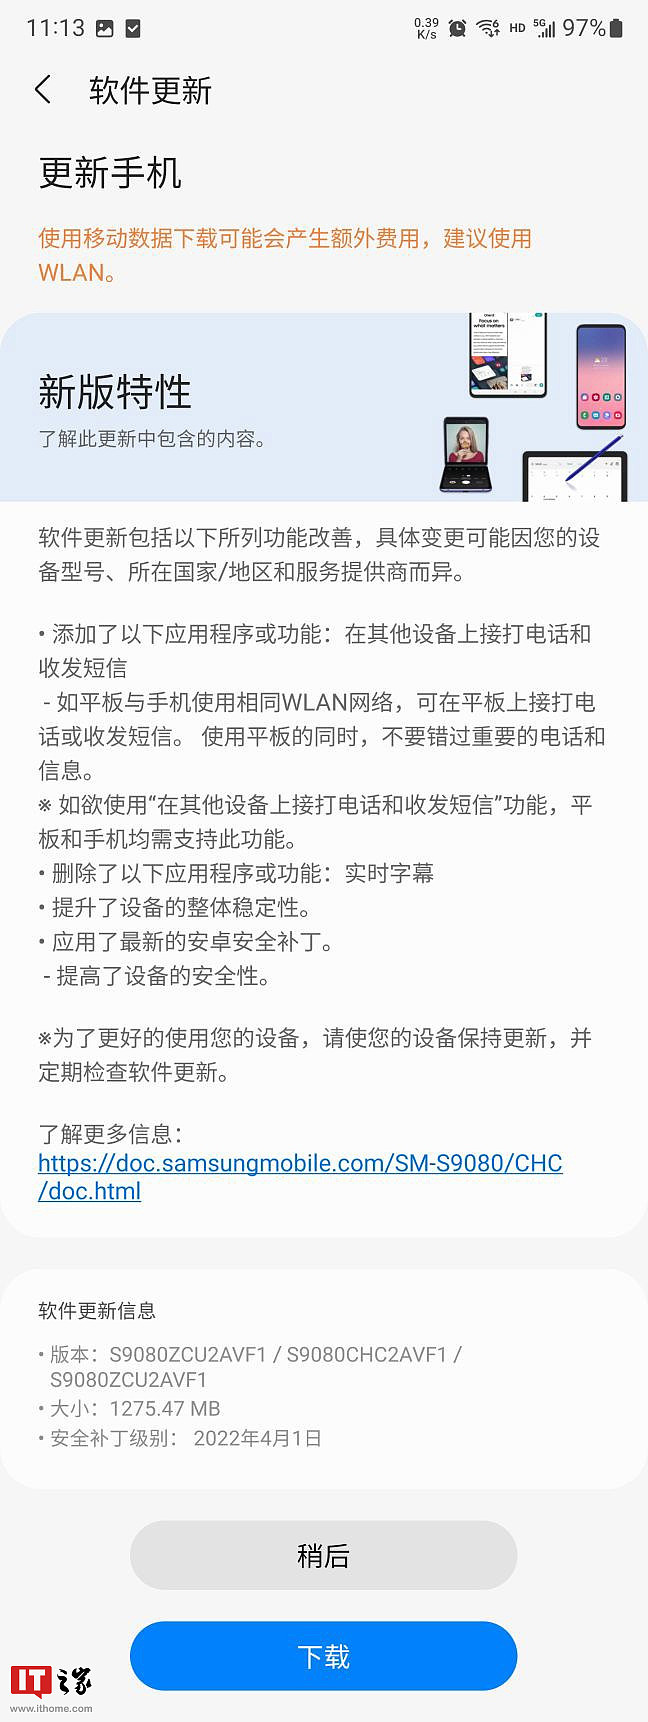 三星手机系统更新被指偷懒，仅在韩国、中国市场列出详细更新日志 - 1